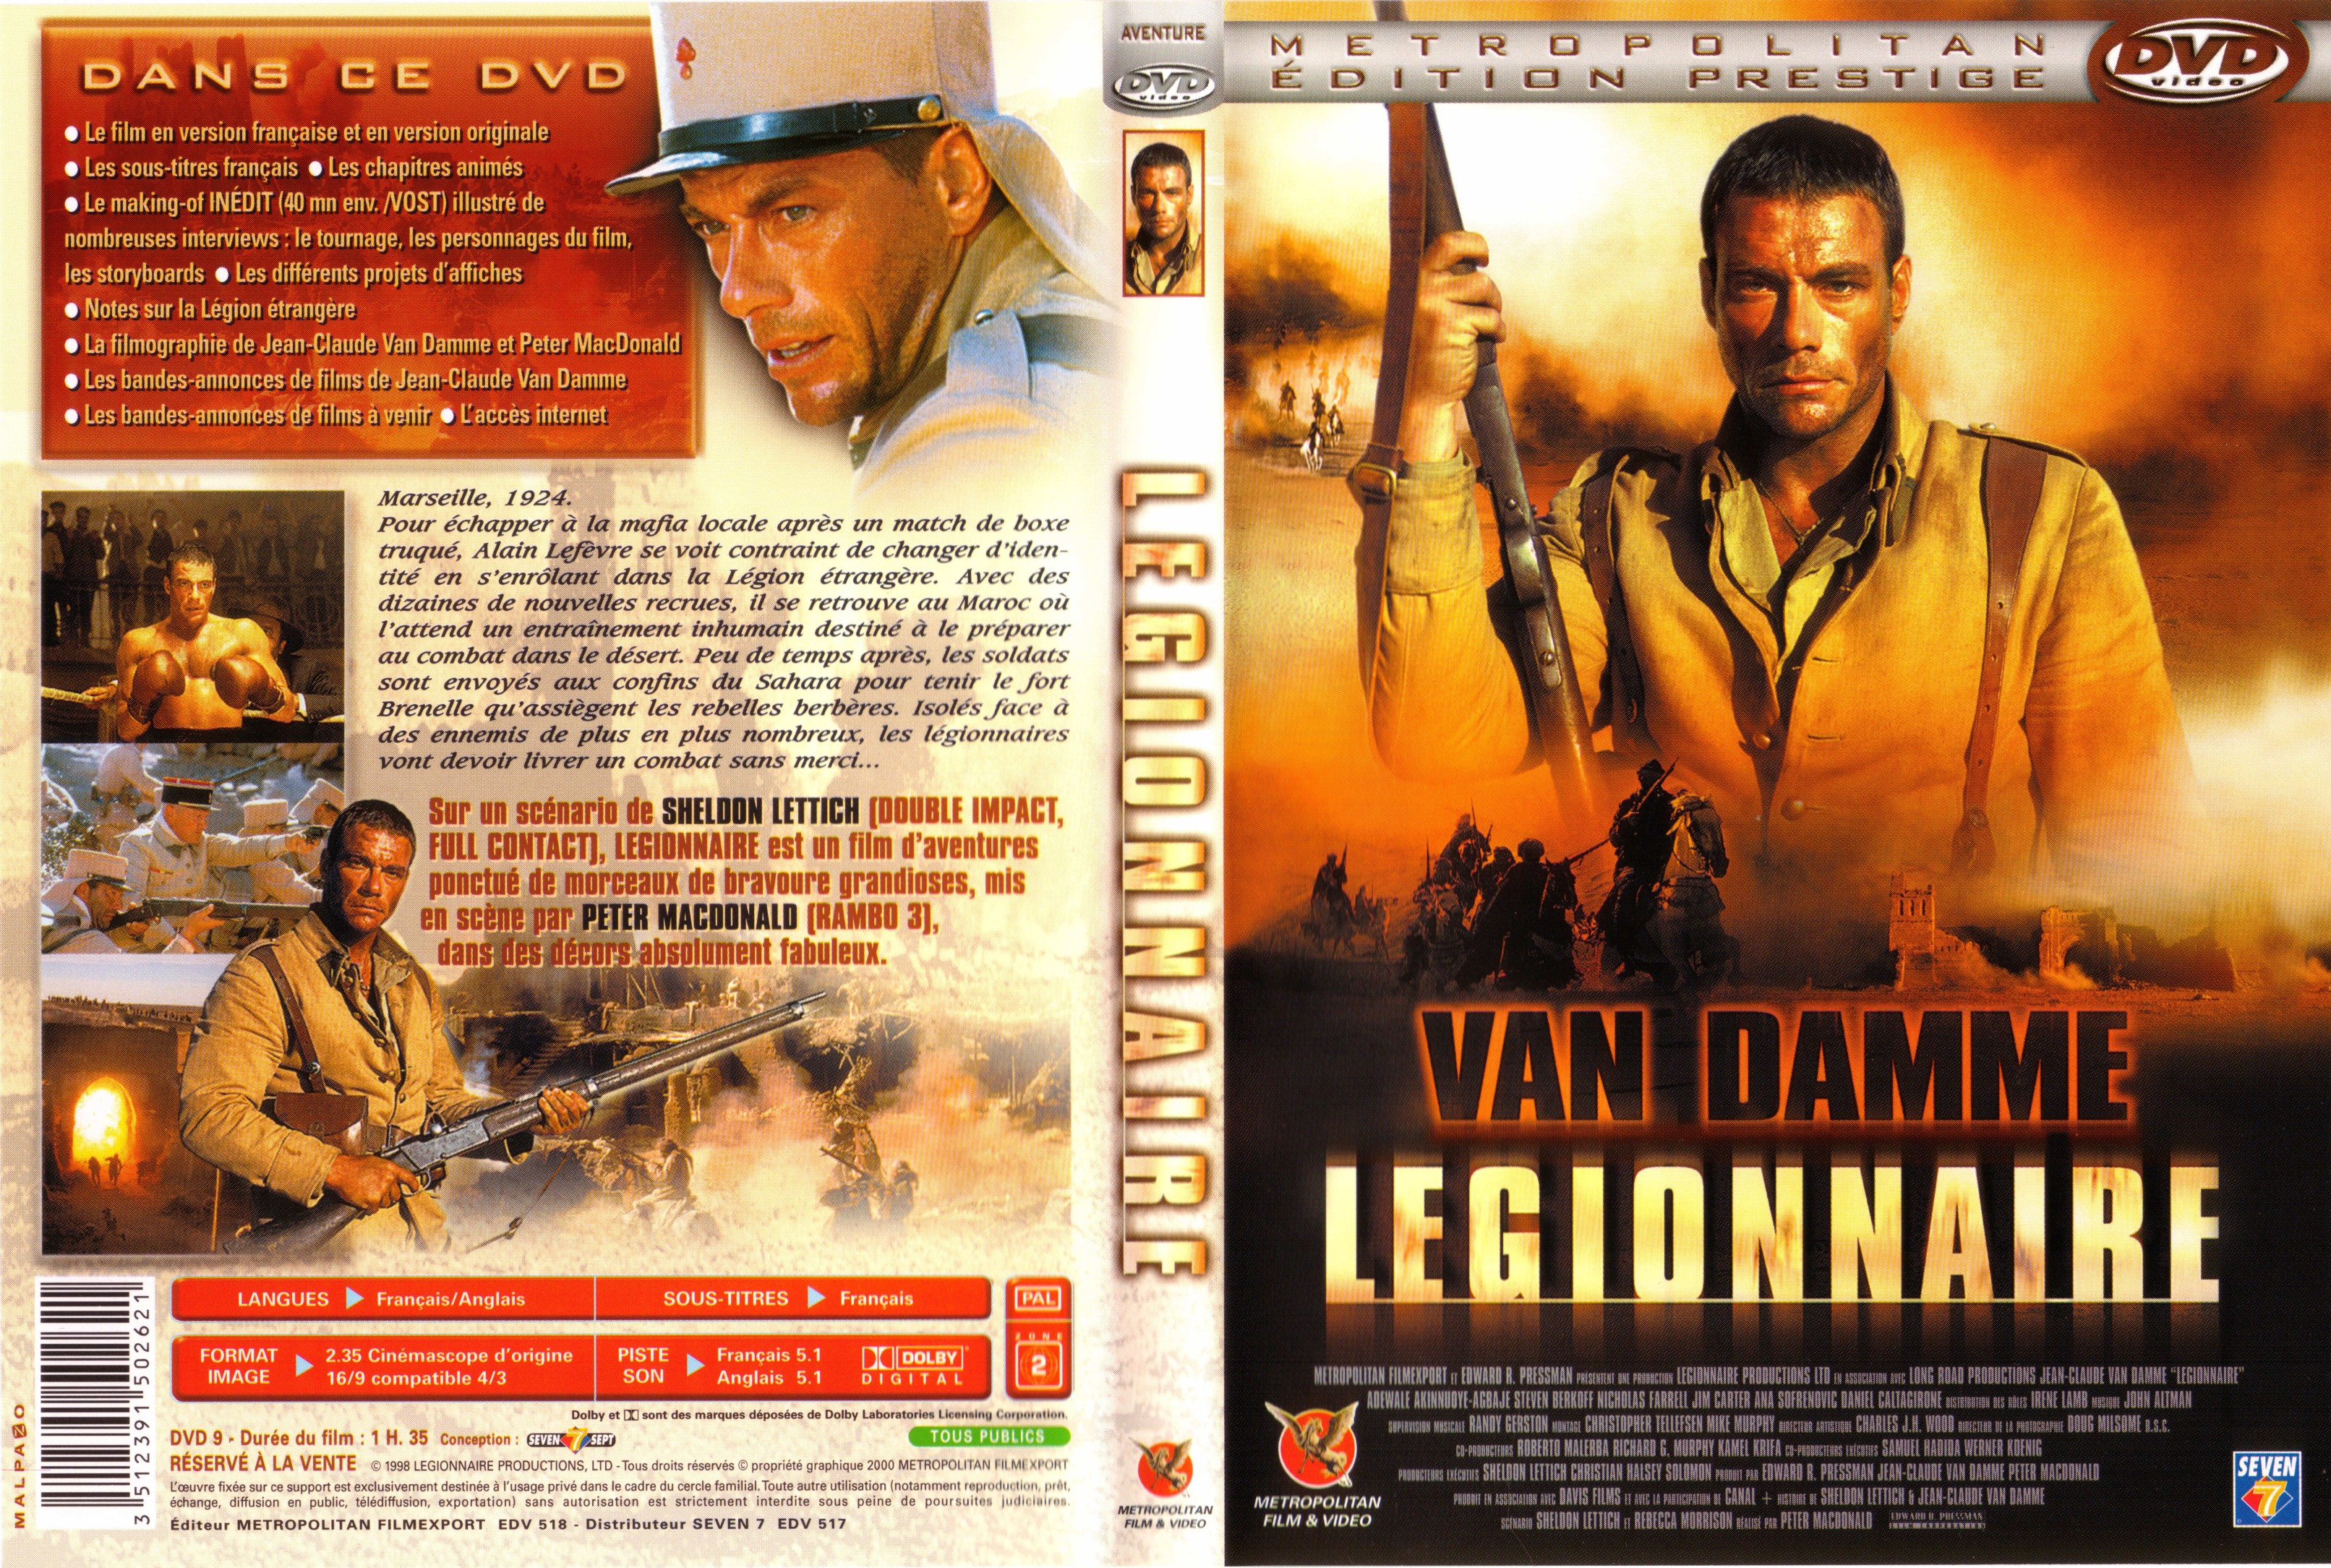 Jaquette DVD Legionnaire